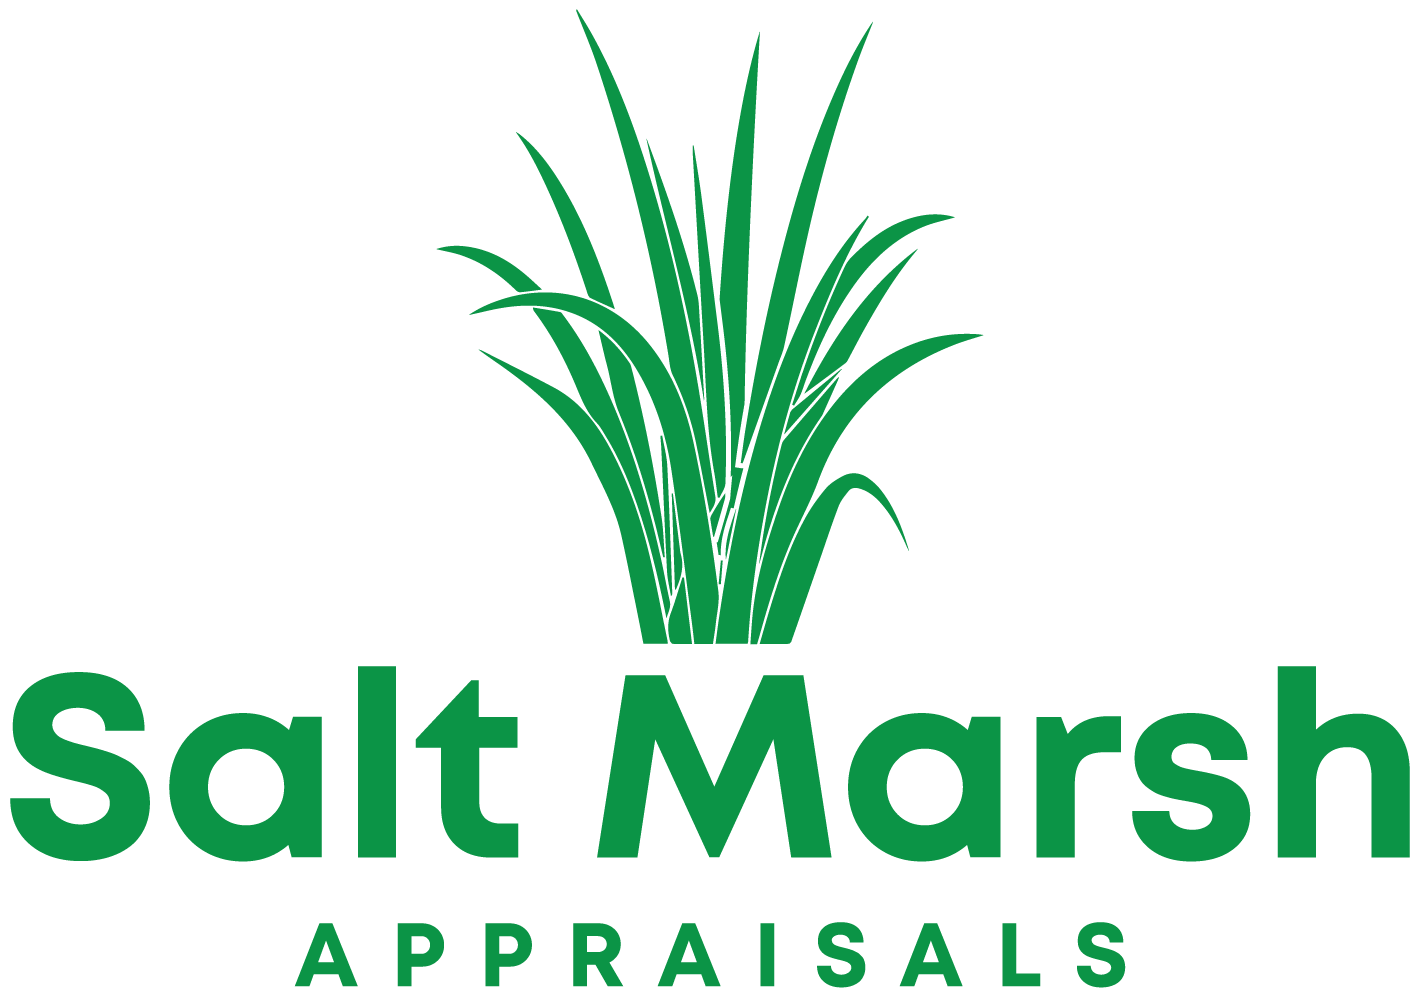 Salt Marsh Appraisals